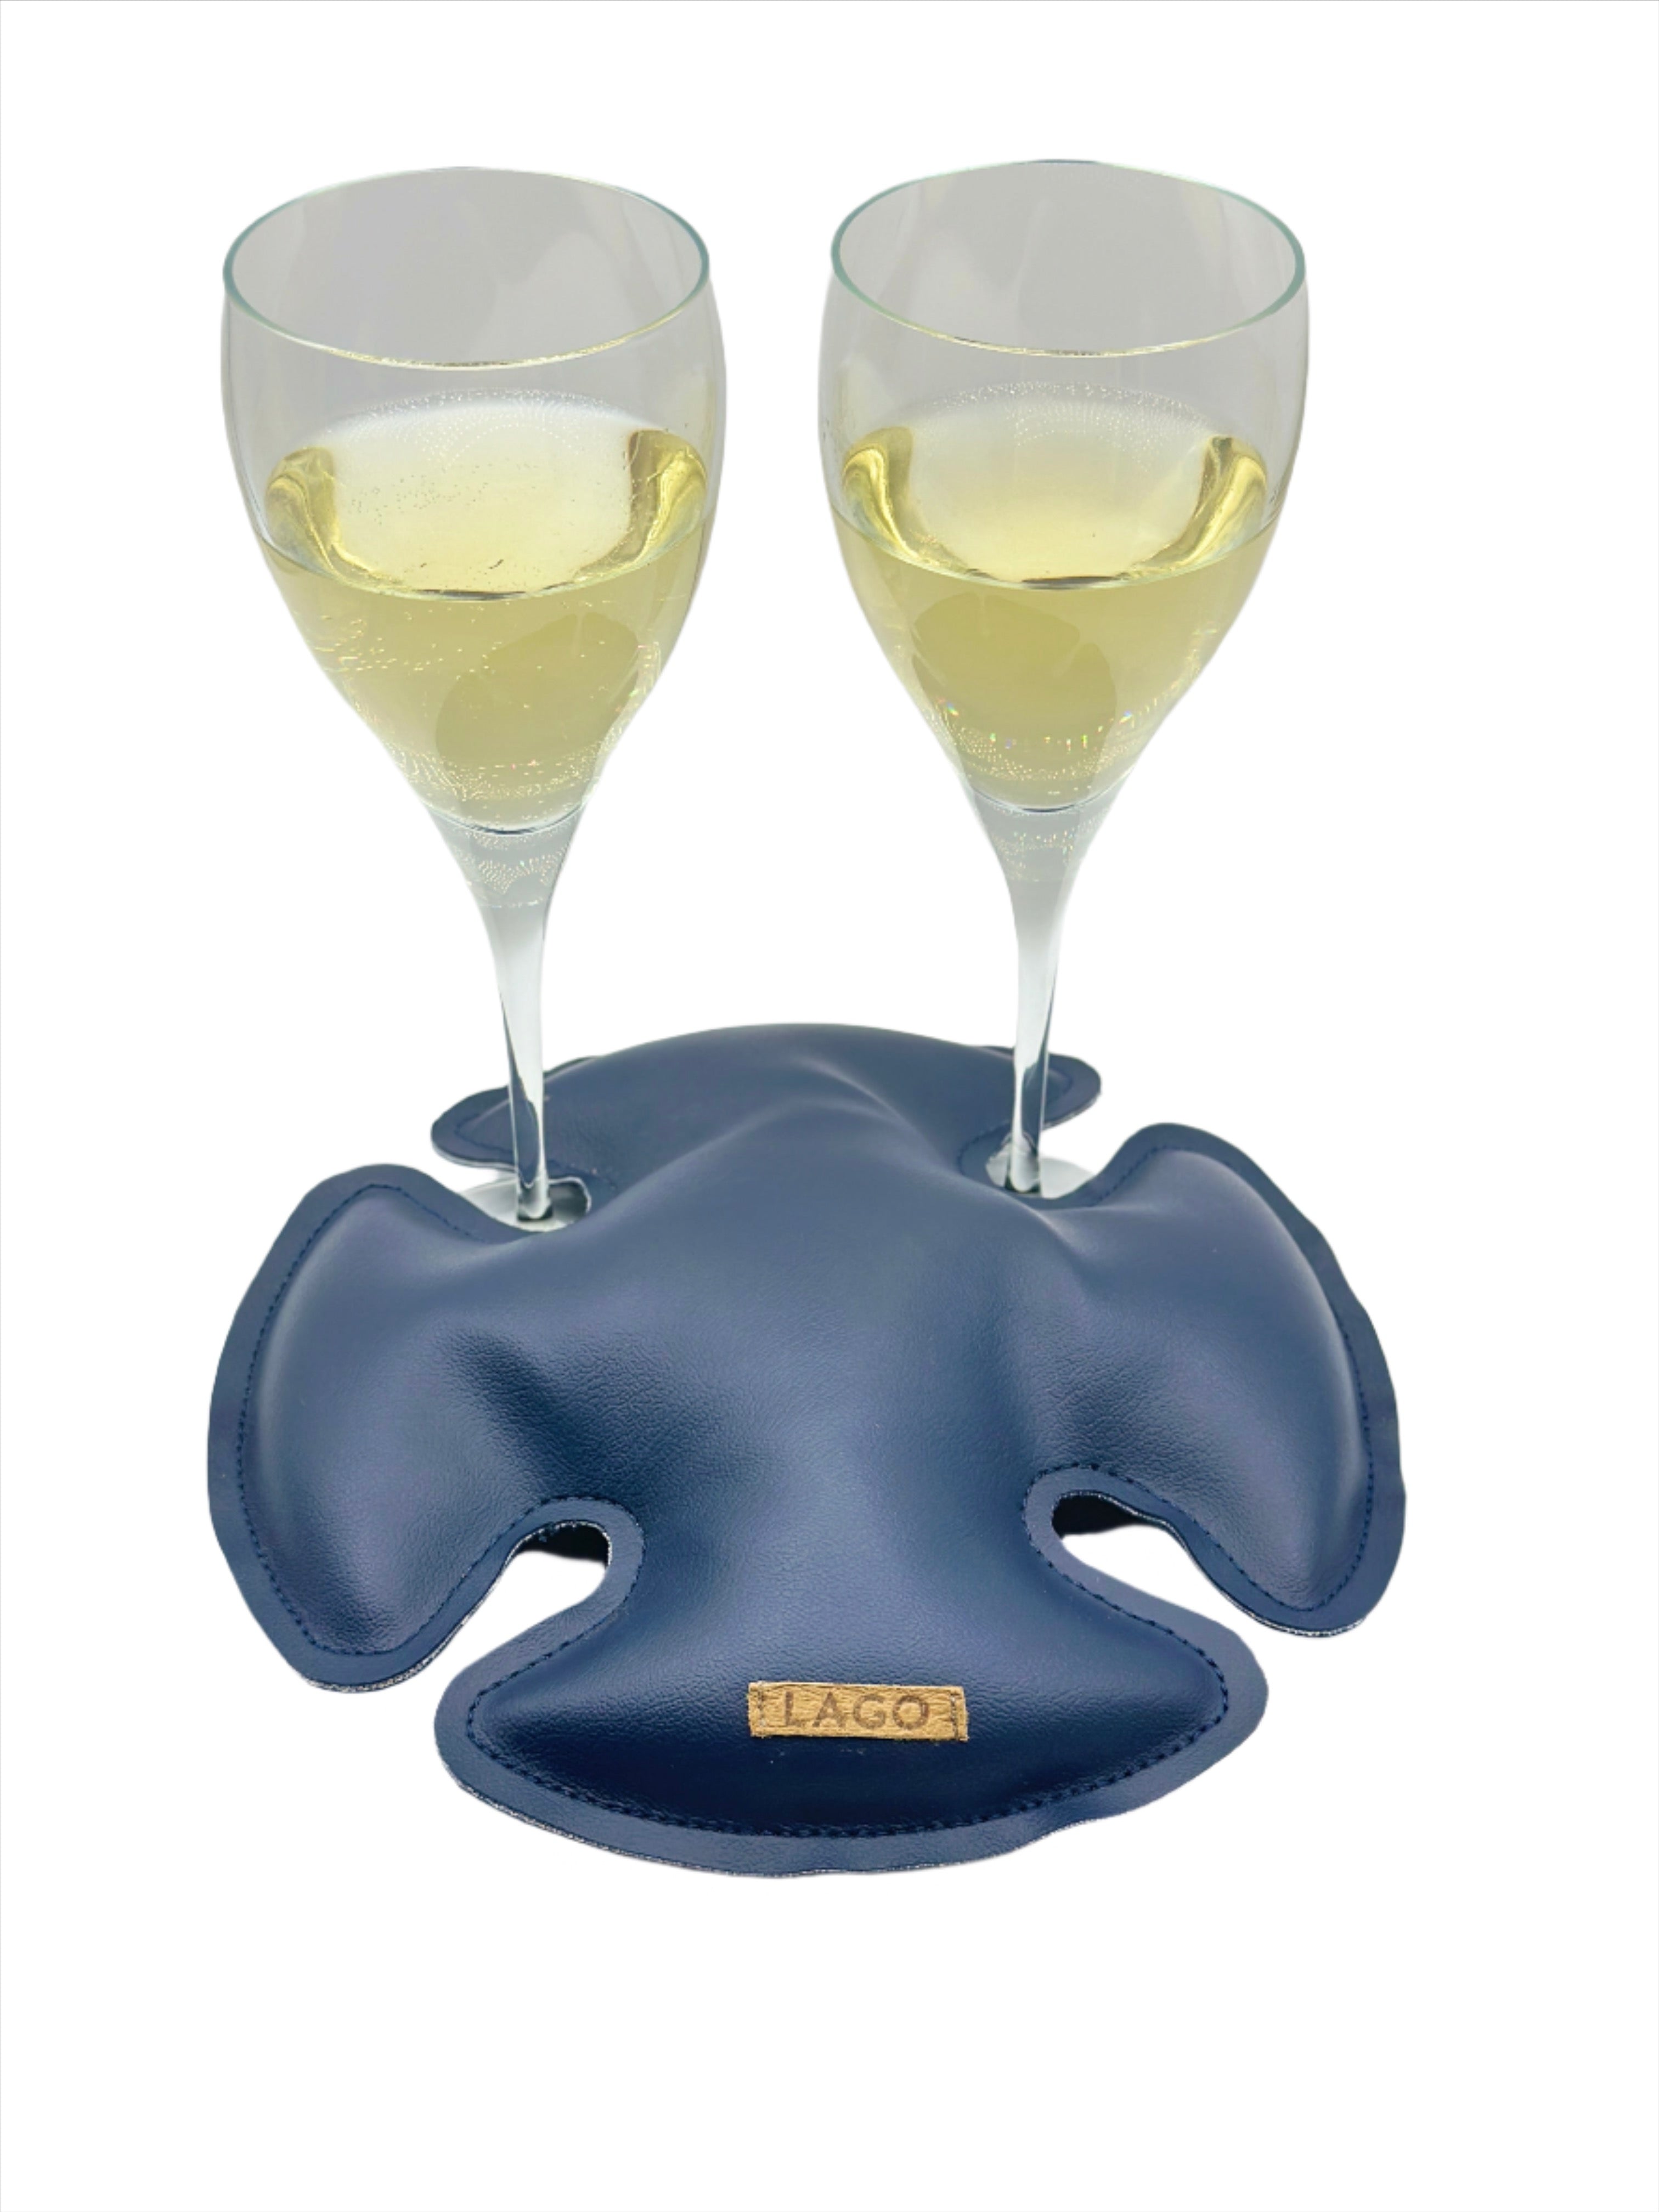 2 wine glasses secured with Classic Ocean LAGO, the premium stabilizer.